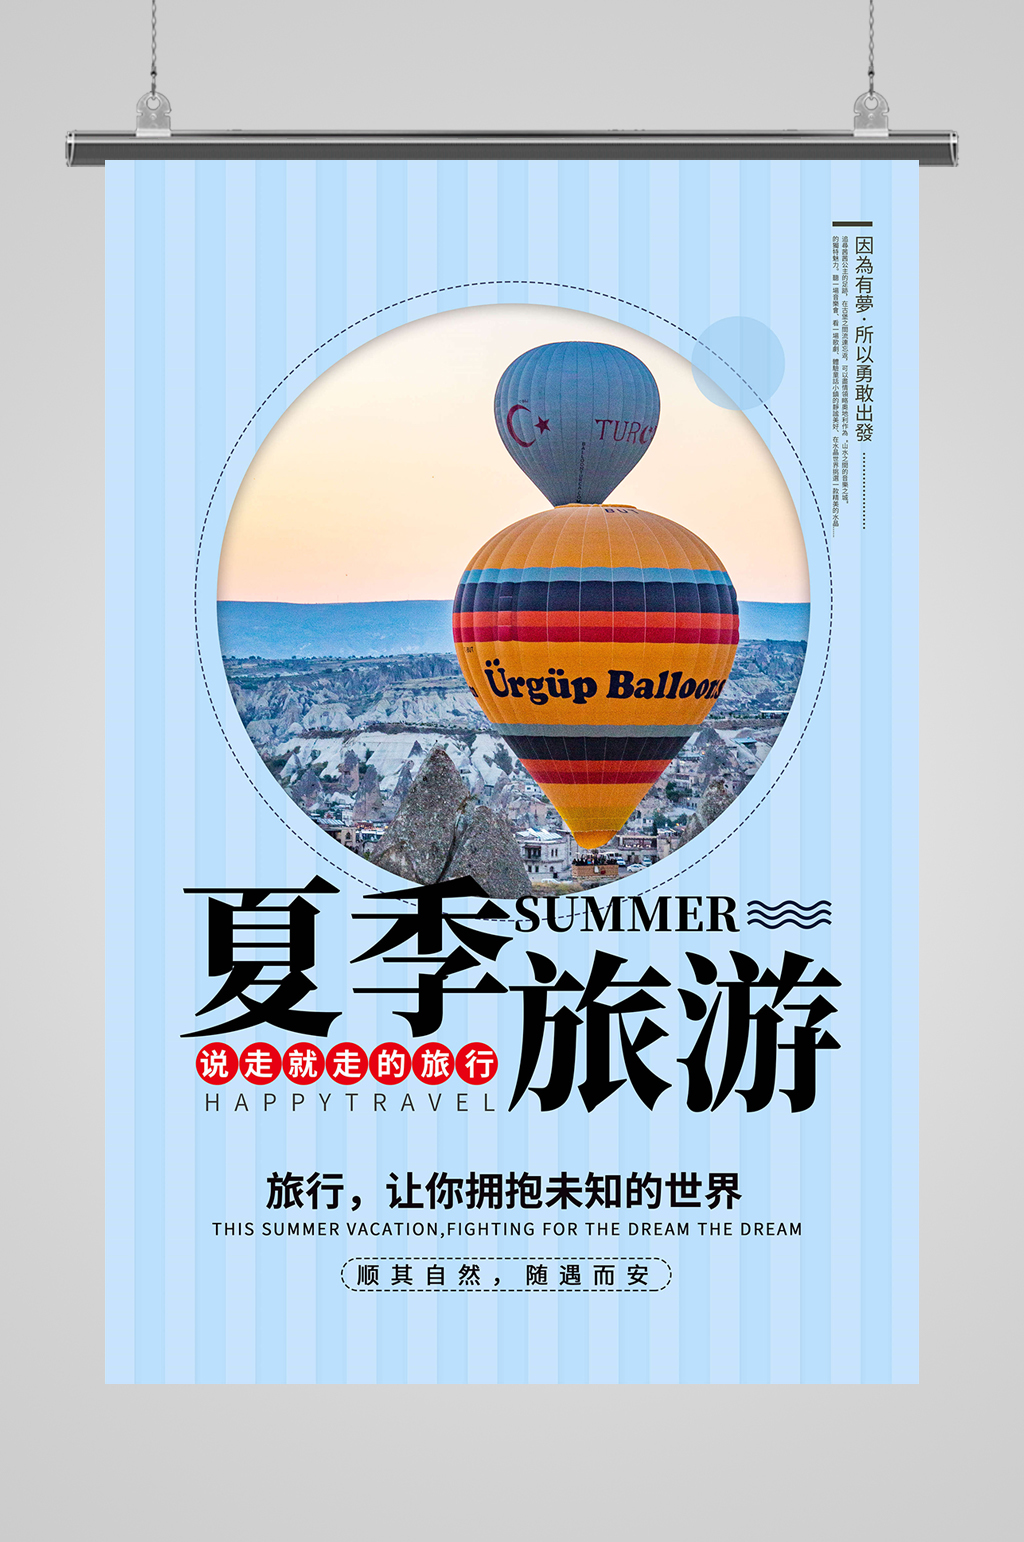 旅游宣传海报素材免费下载,本作品是由逗小图上传的原创平面广告素材